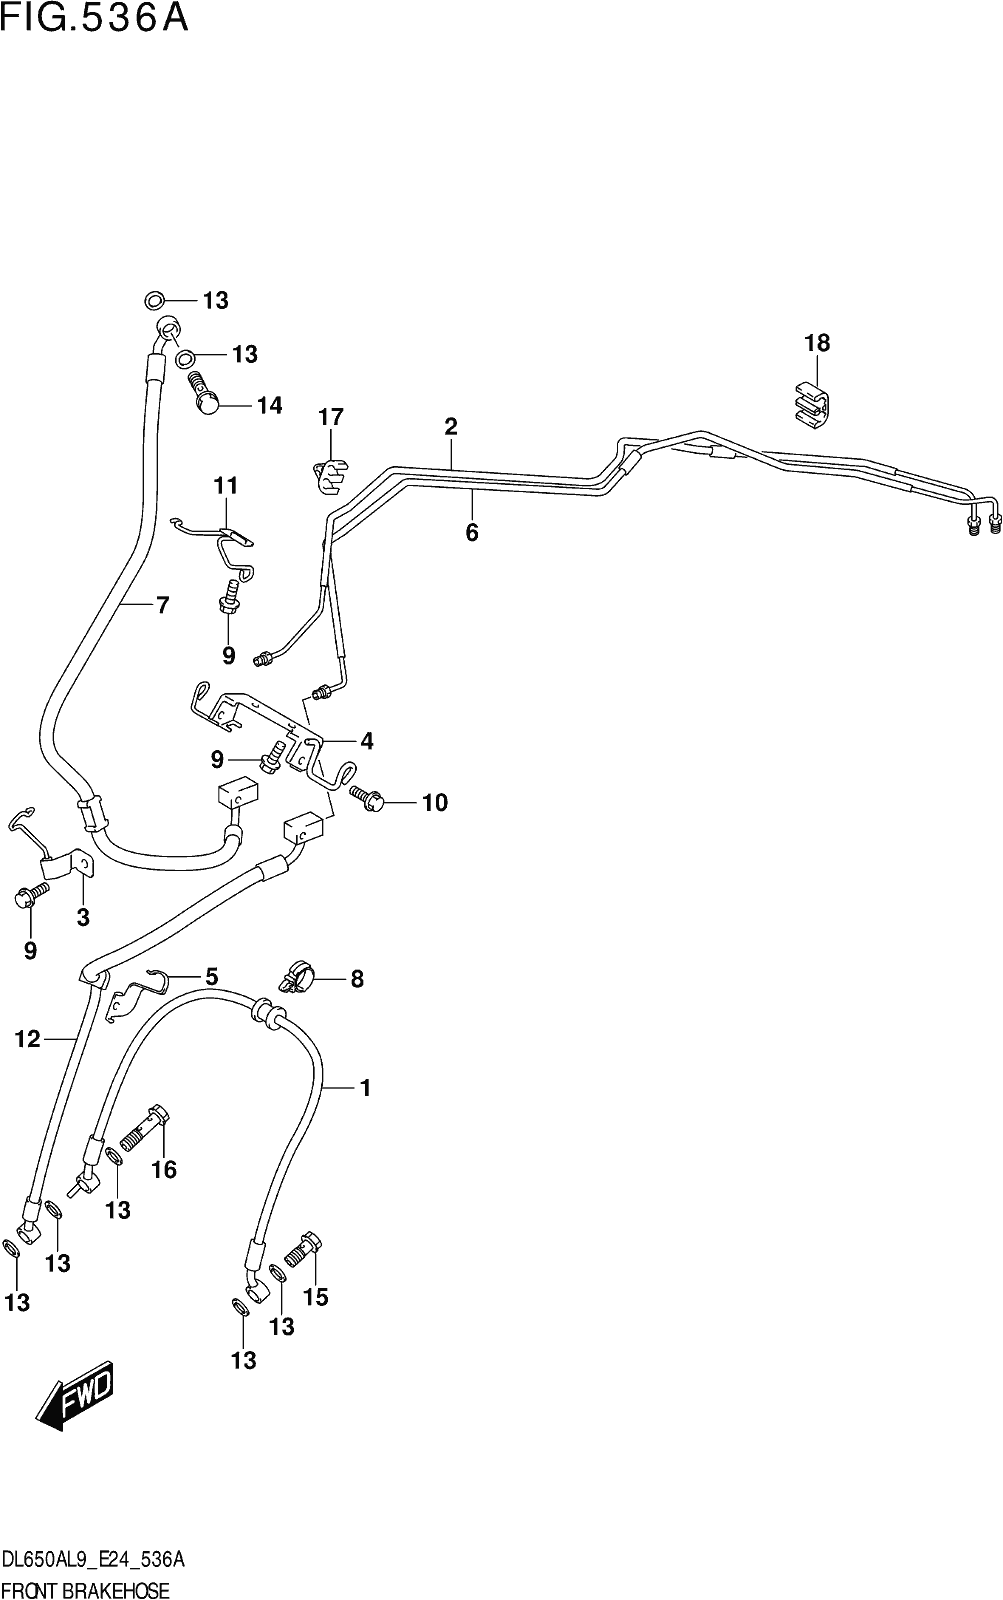 Fig.536a Front Brake Hose